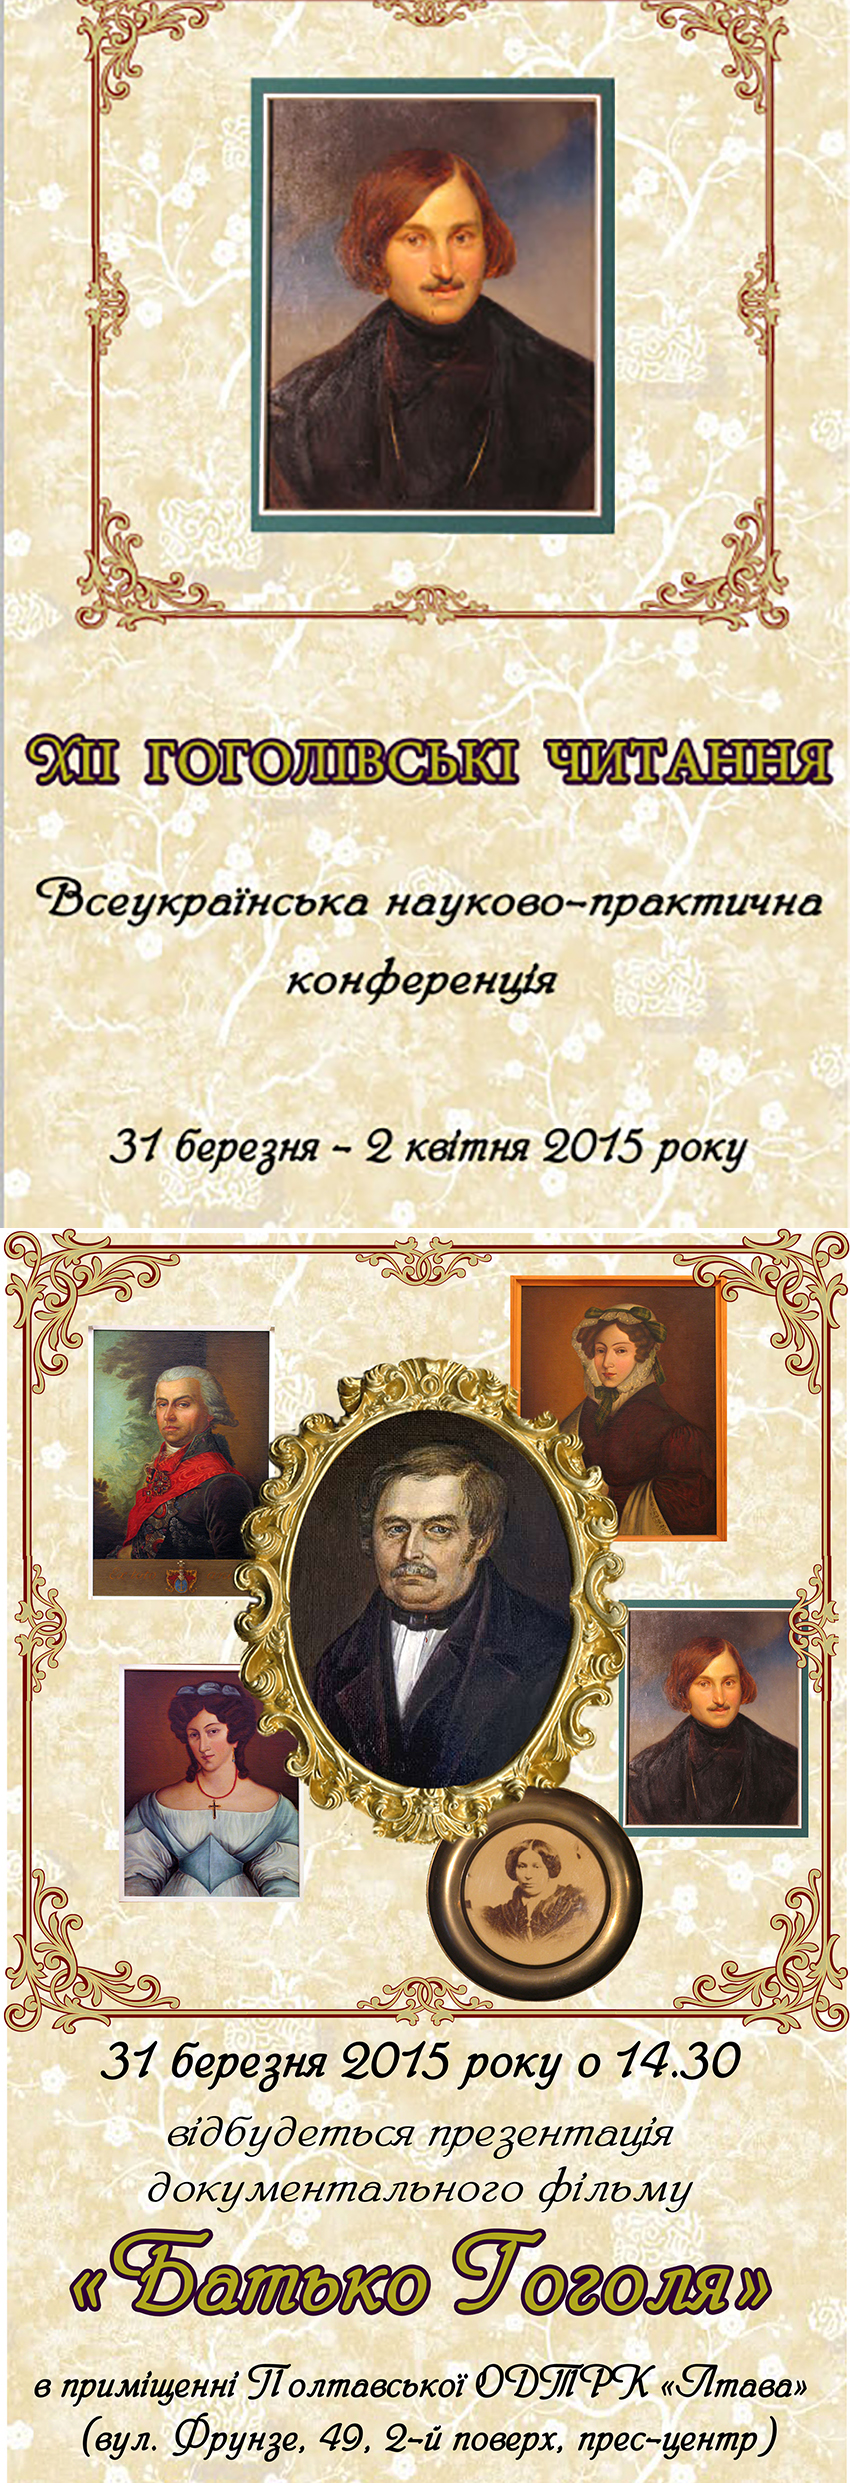 Двенадцатые Гоголевские чтения в Полтаве